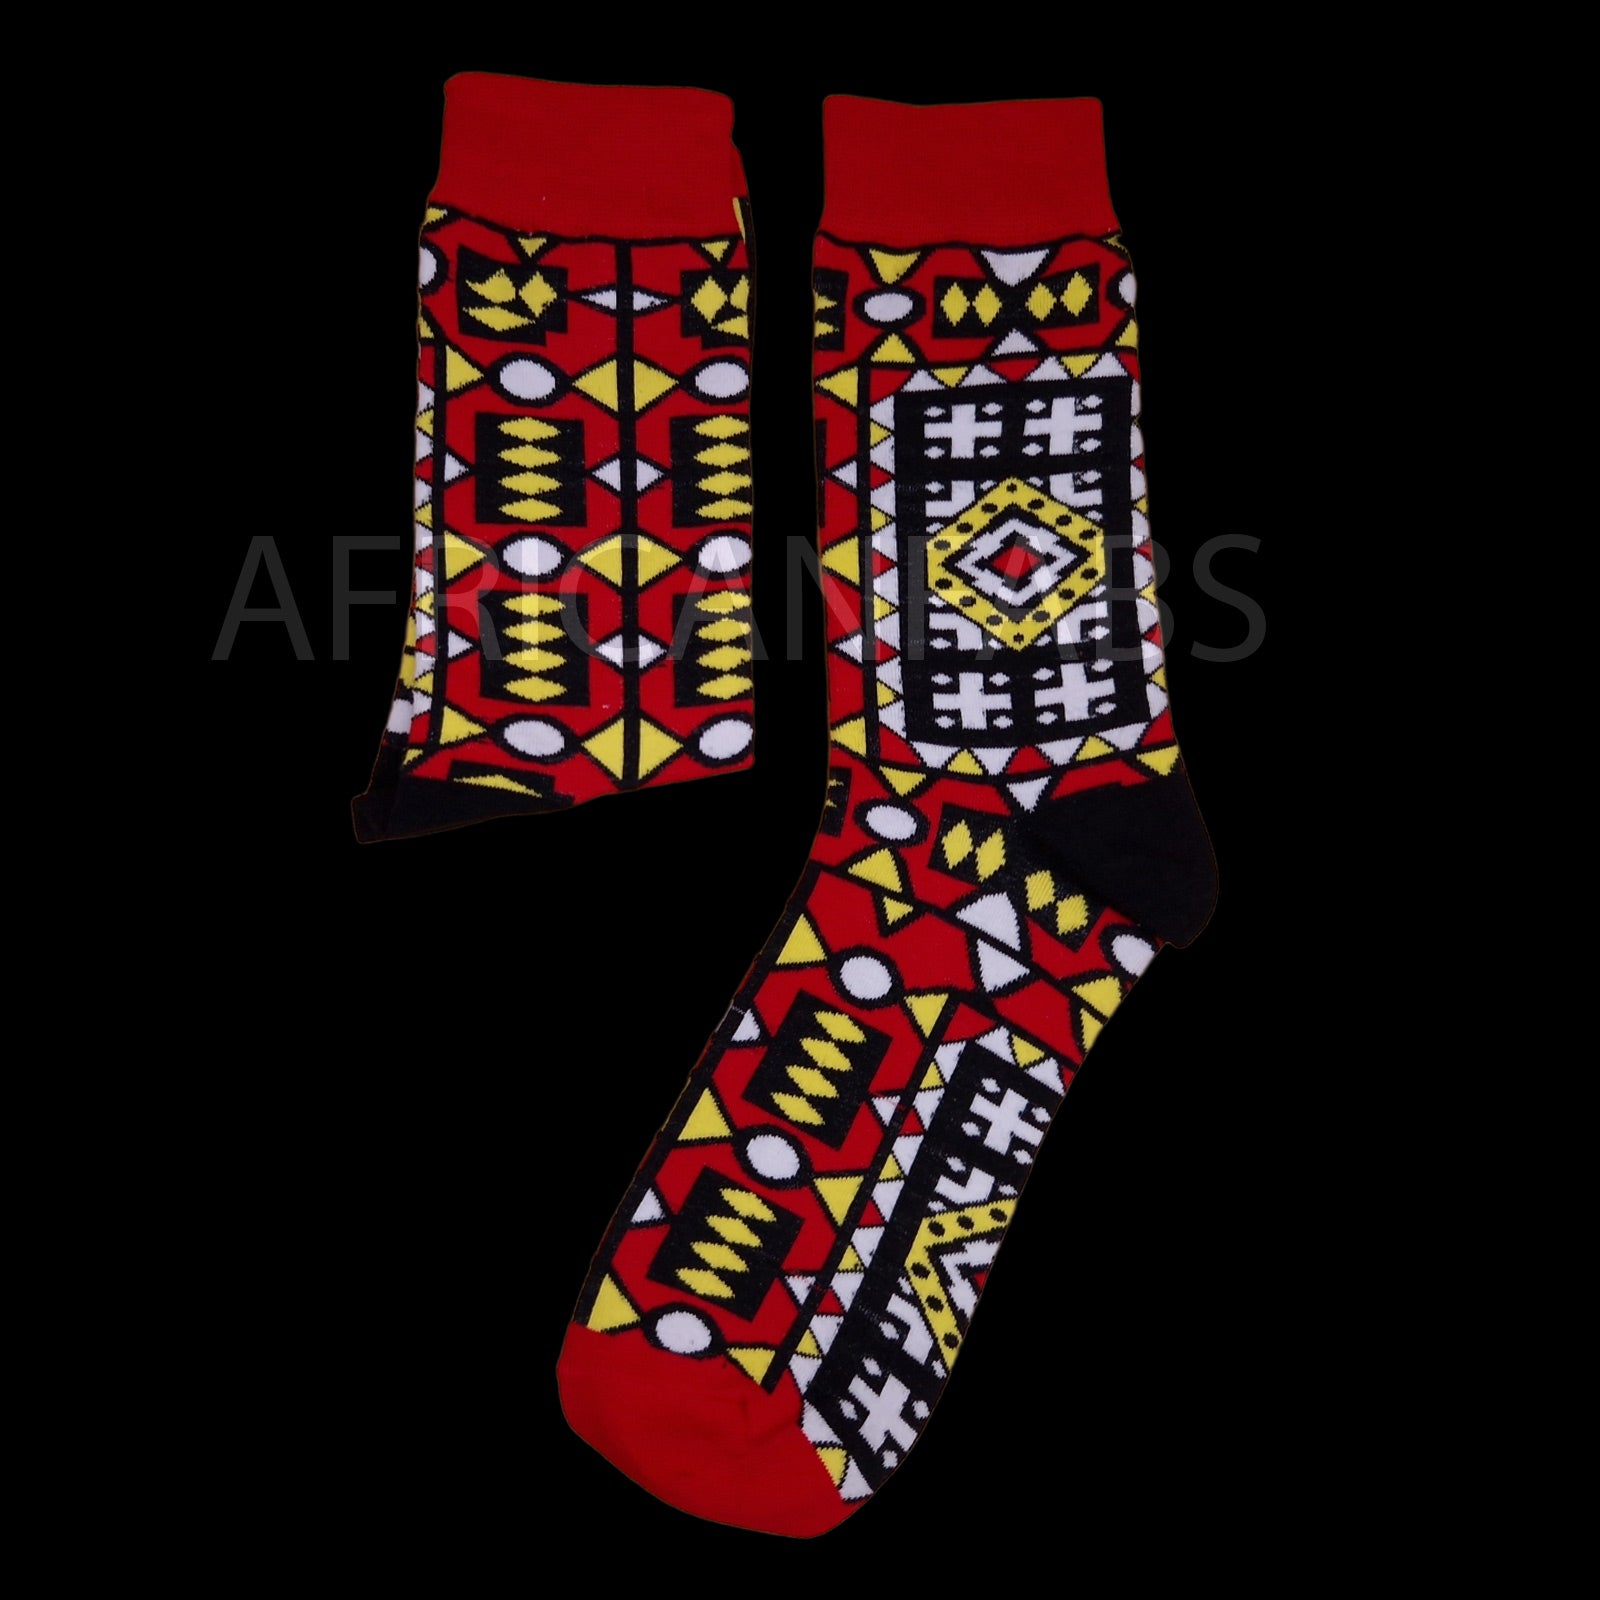 African socks / Afro socks / Samakaka socks - Red